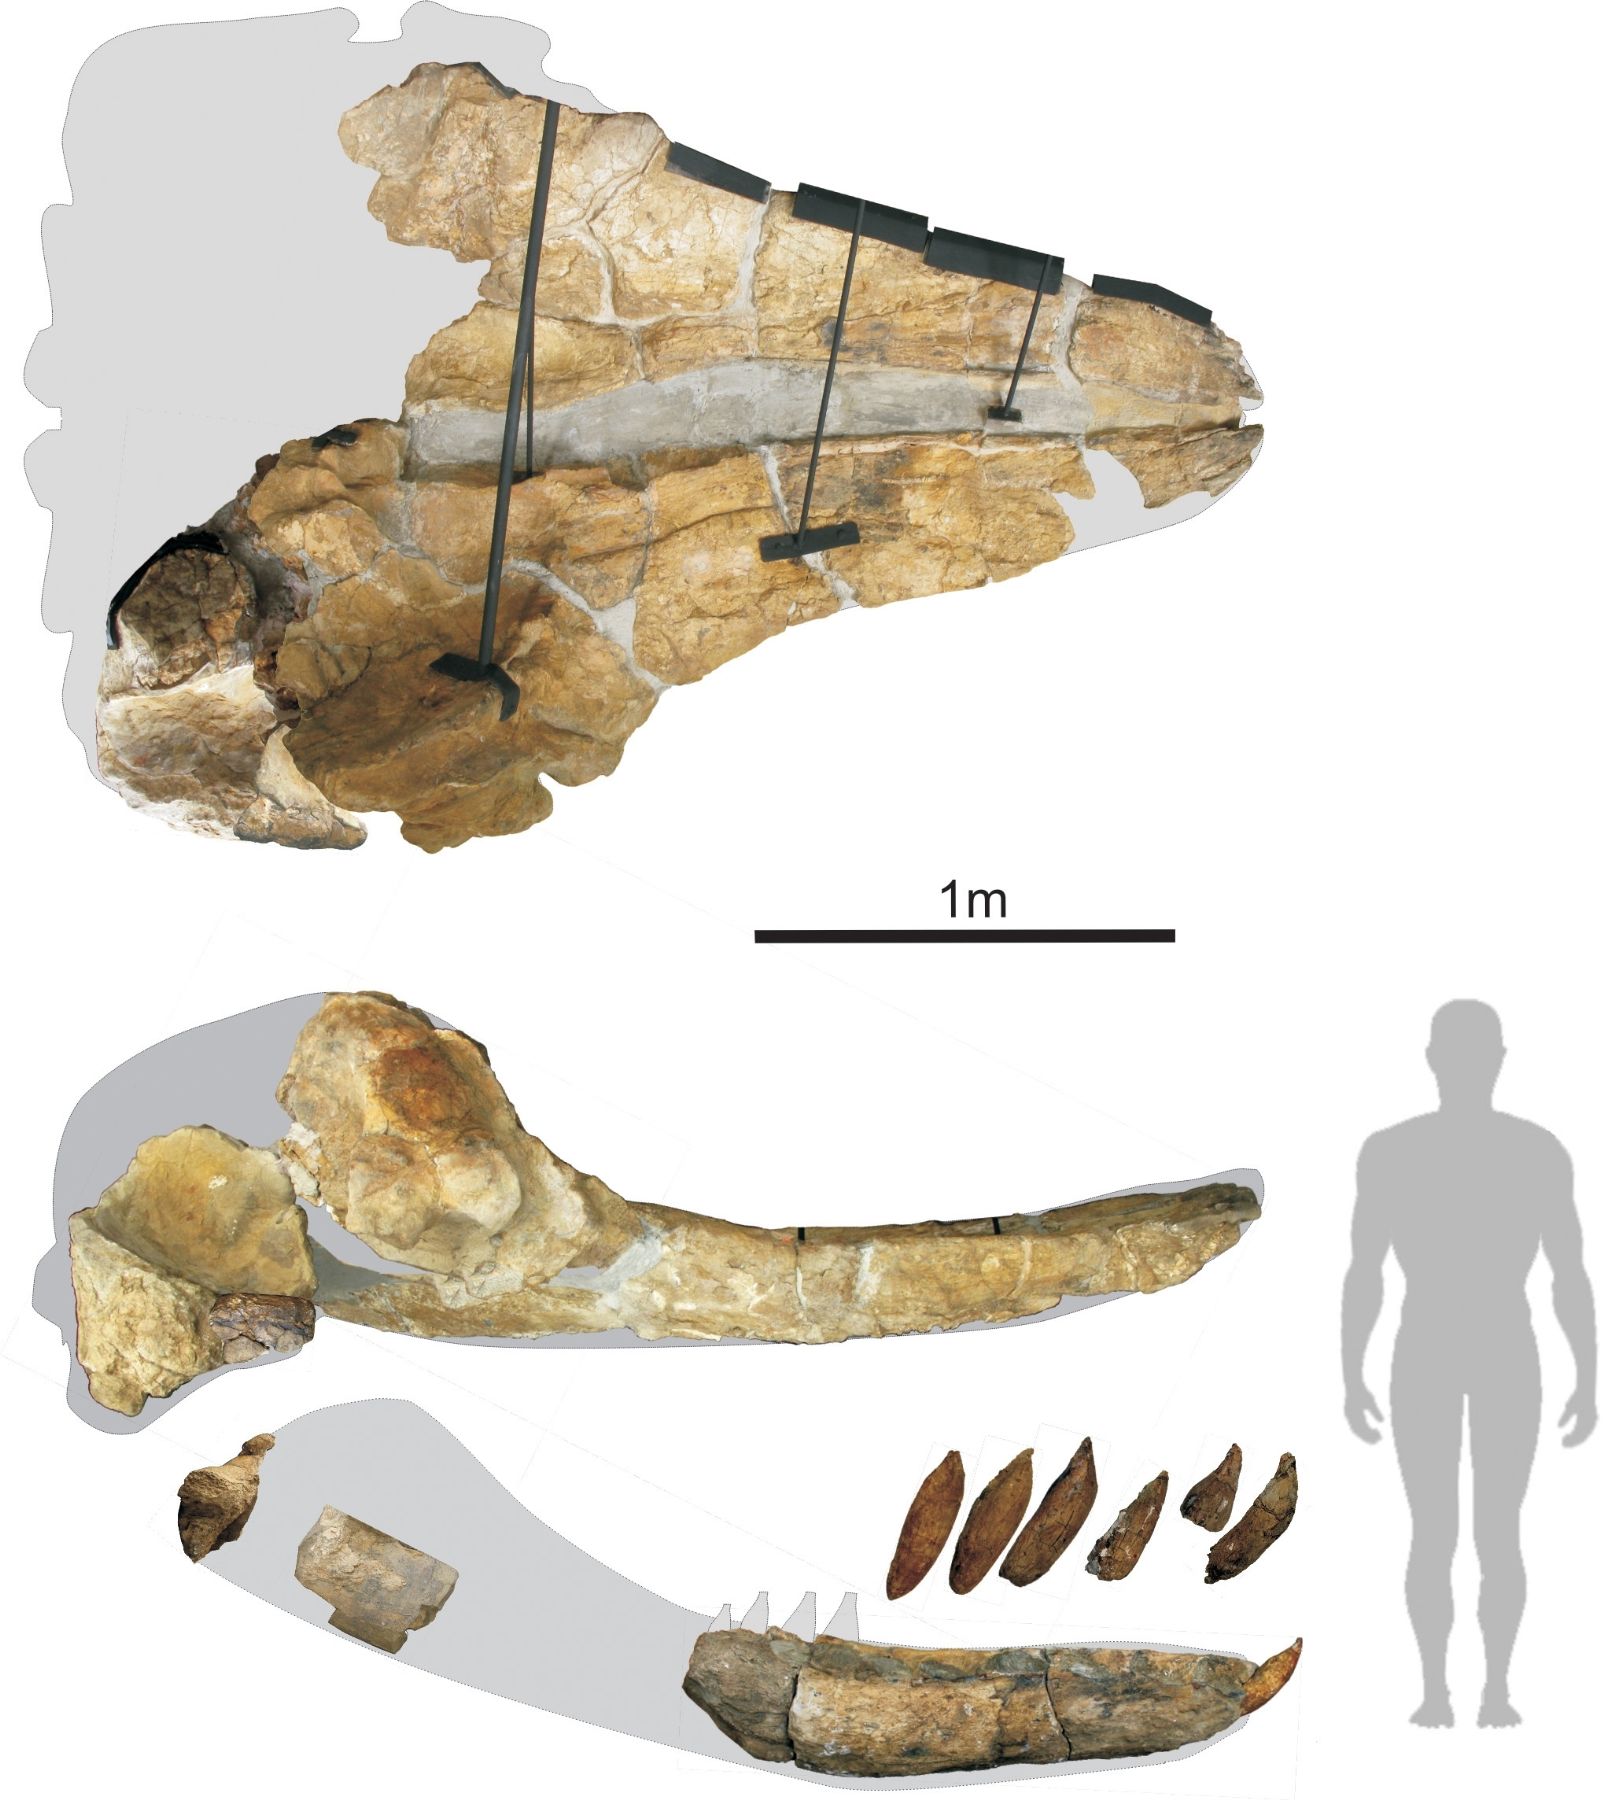 Medida del tamaño que tuvo Livyatan melvillei, gran depredador marino cuyo fosil fue hallado en Ocucaje.